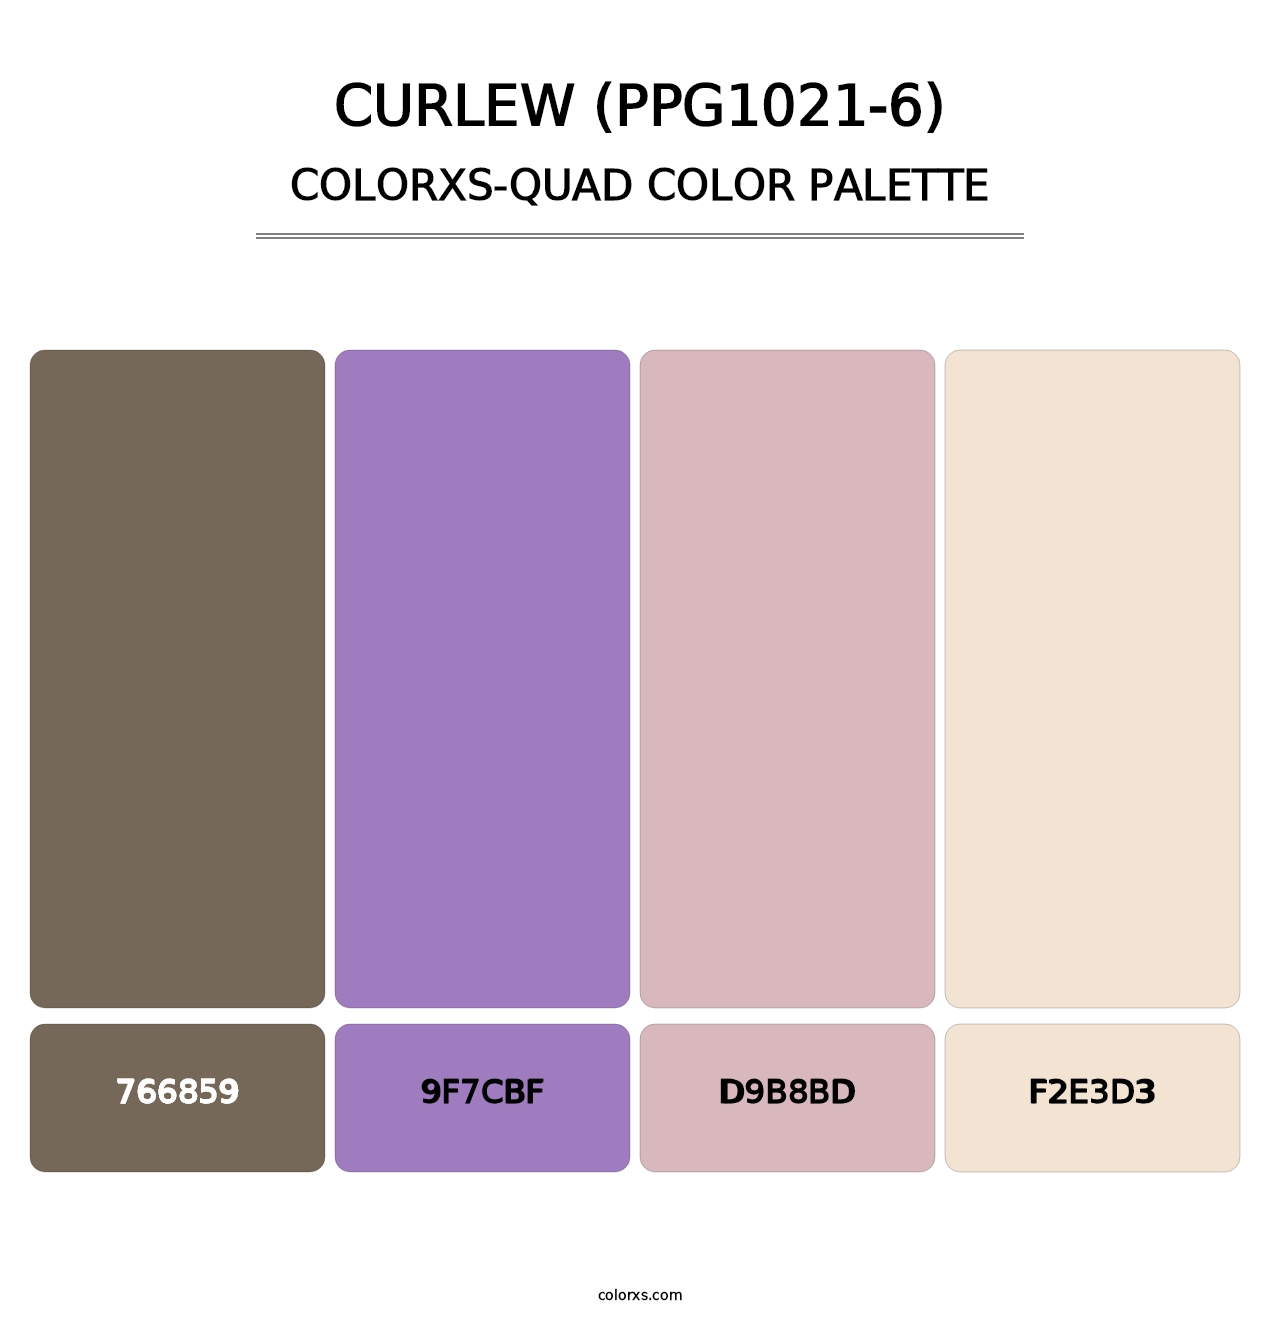 Curlew (PPG1021-6) - Colorxs Quad Palette